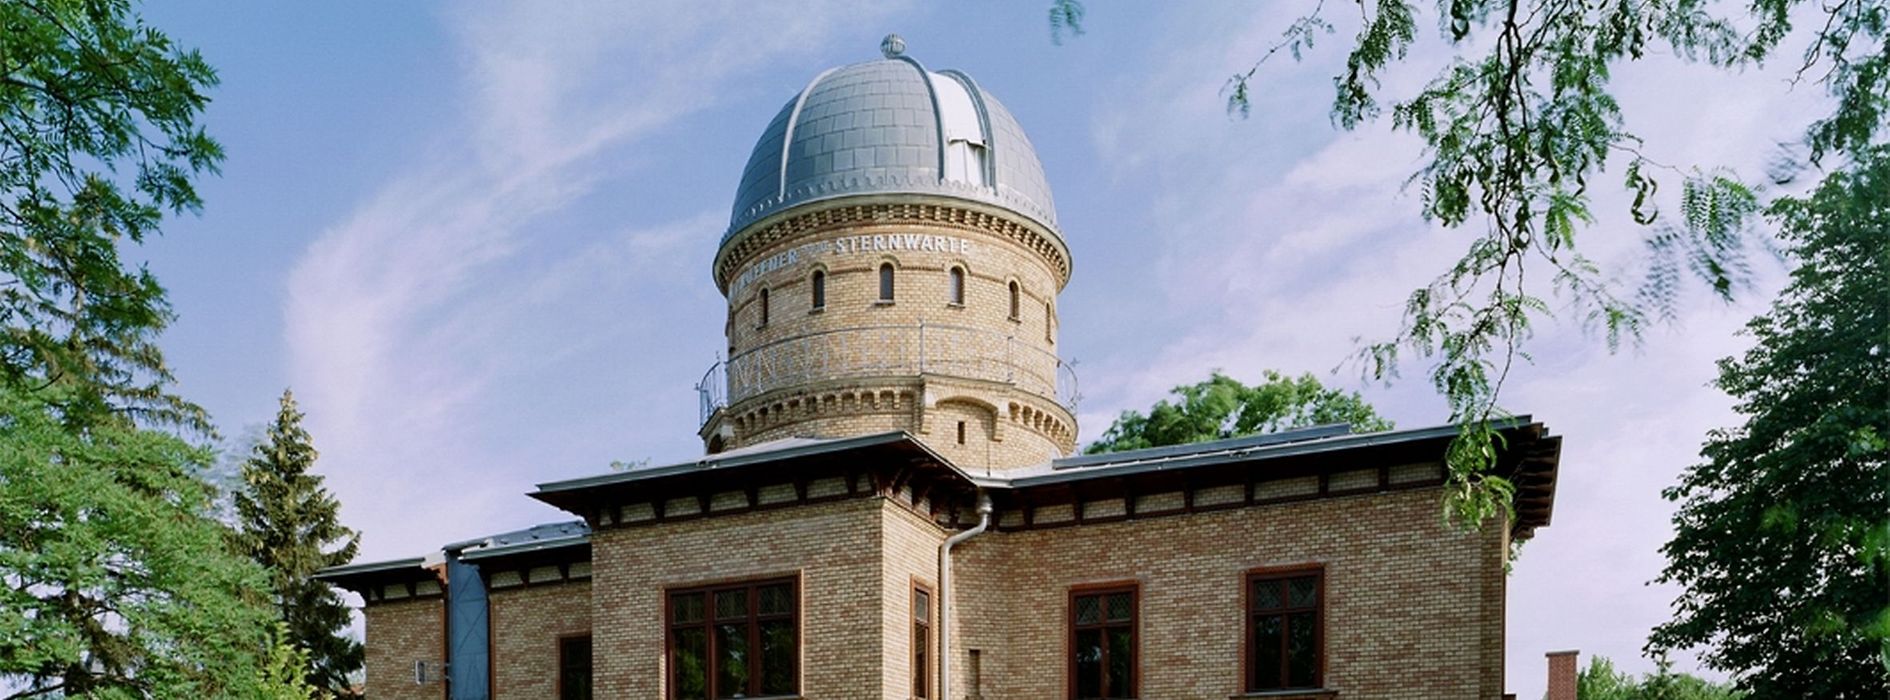 クフナー天文台